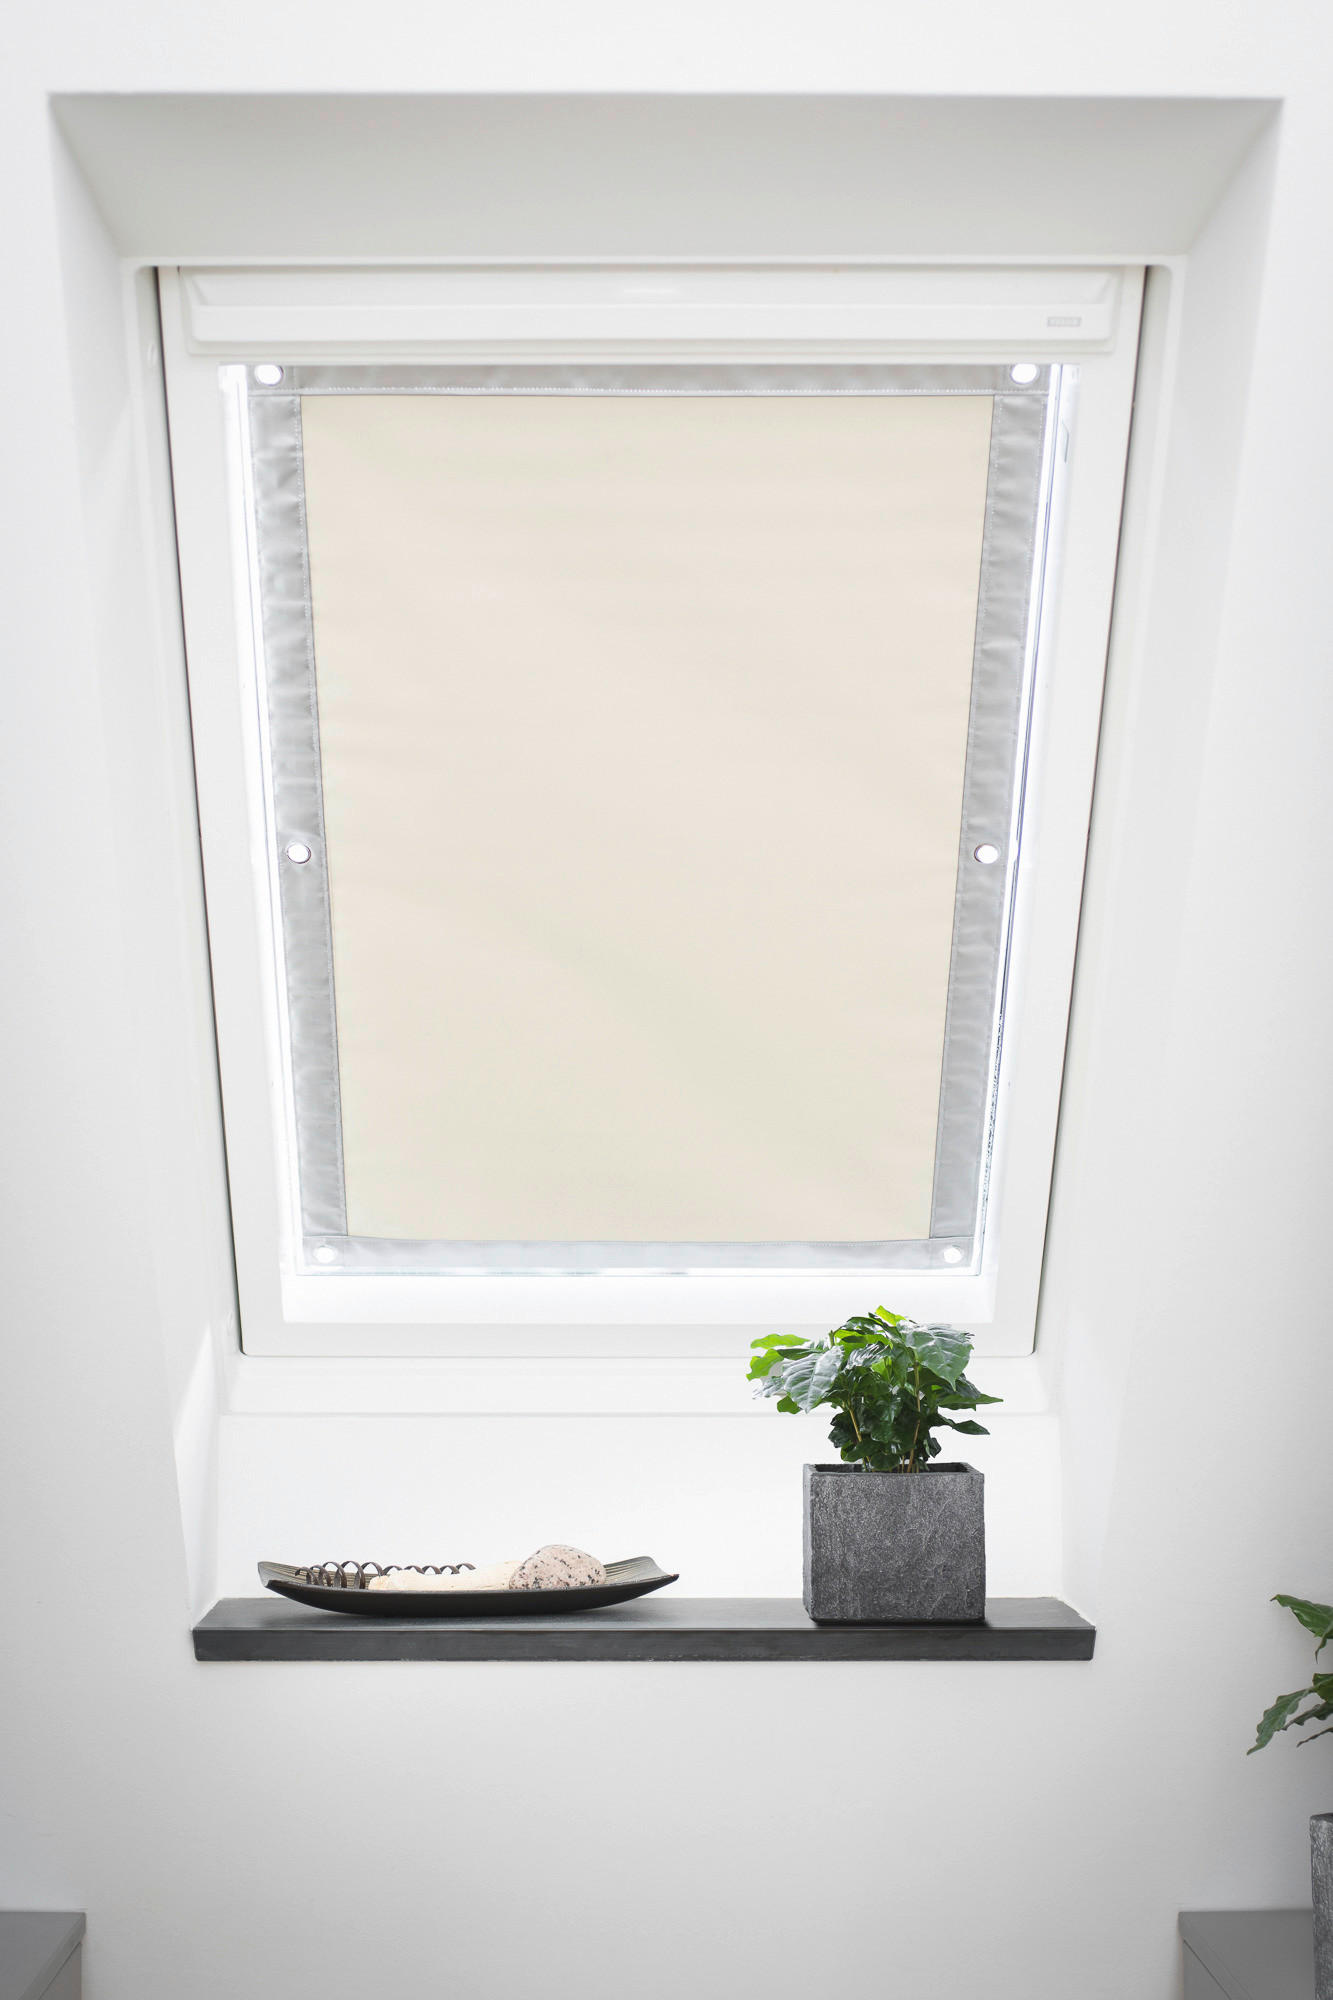 Dachfenster-Sonnenschutz VD beige B/L: ca. 94x96,9 cm